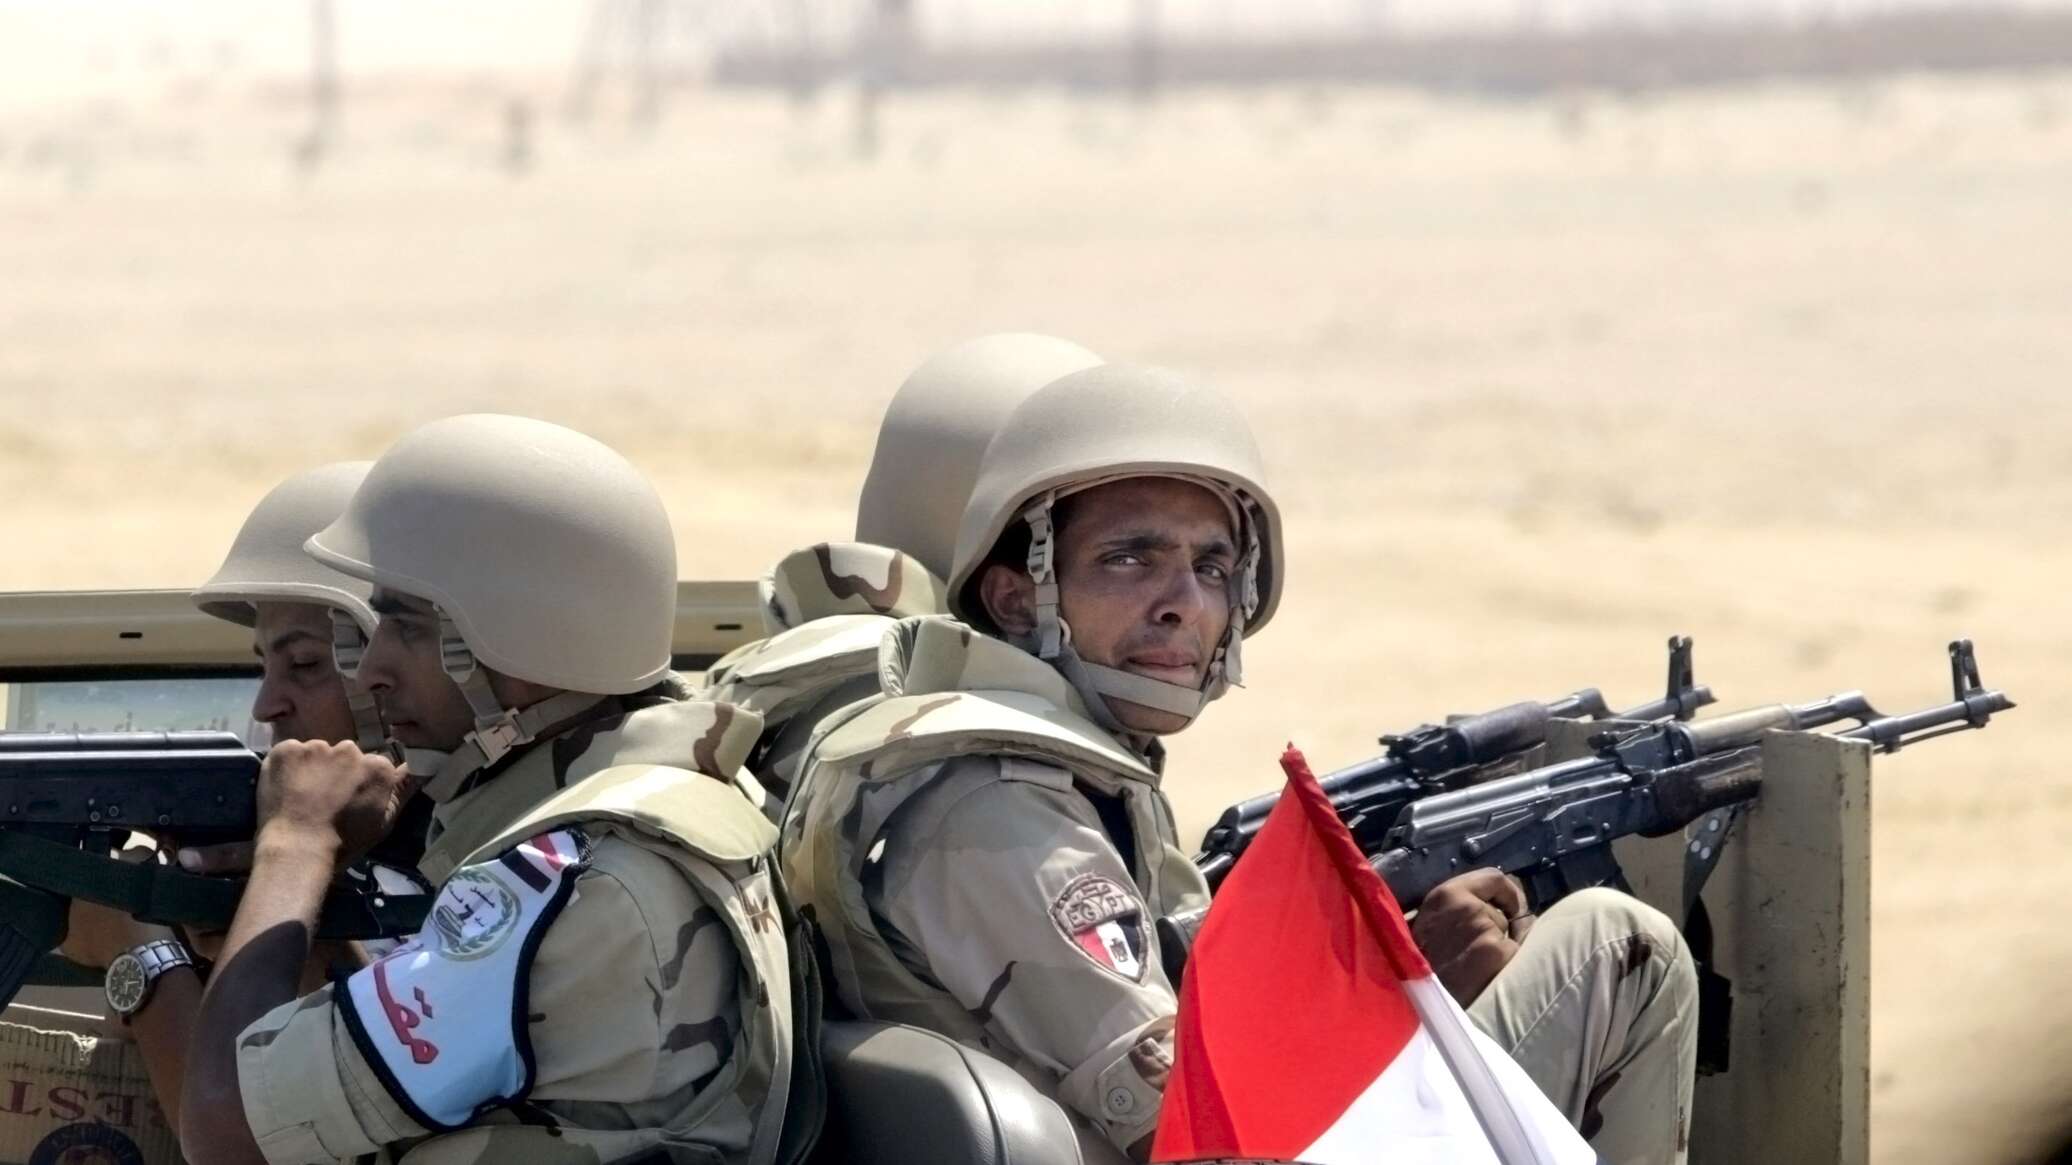 مصر تعلن نتائج التحقيقات في هجمات طالت منطقتي نويبع وطابا الحدوديتين